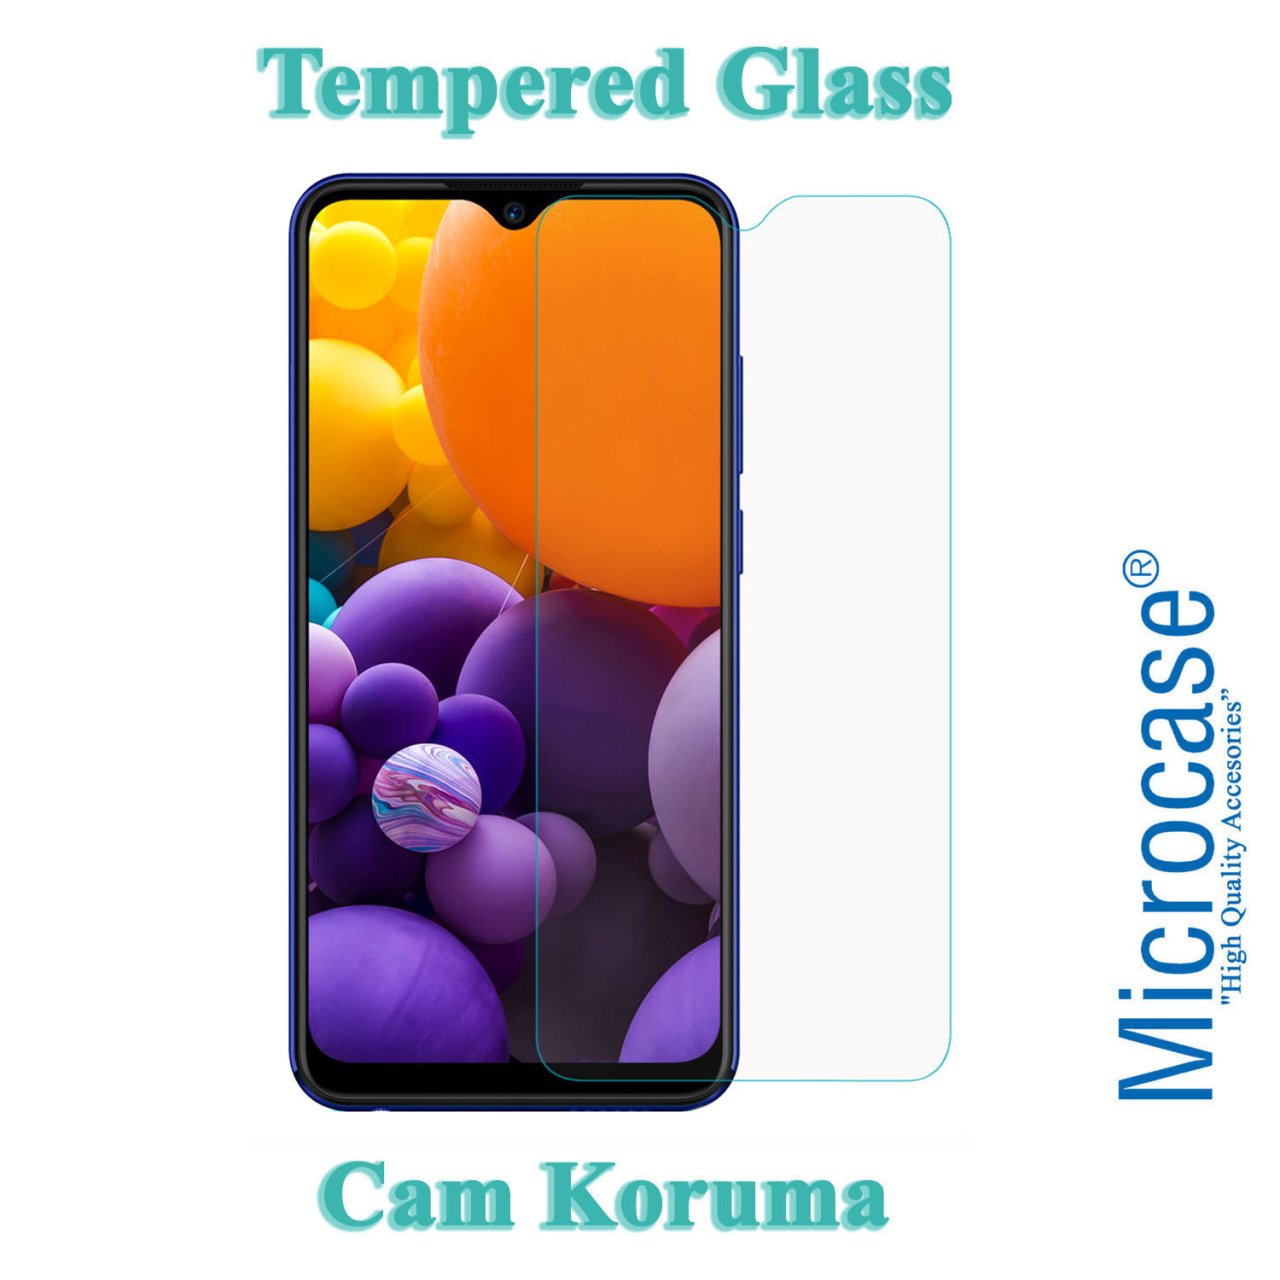 Microcase Casper Via G4 Tempered Glass Cam Koruma